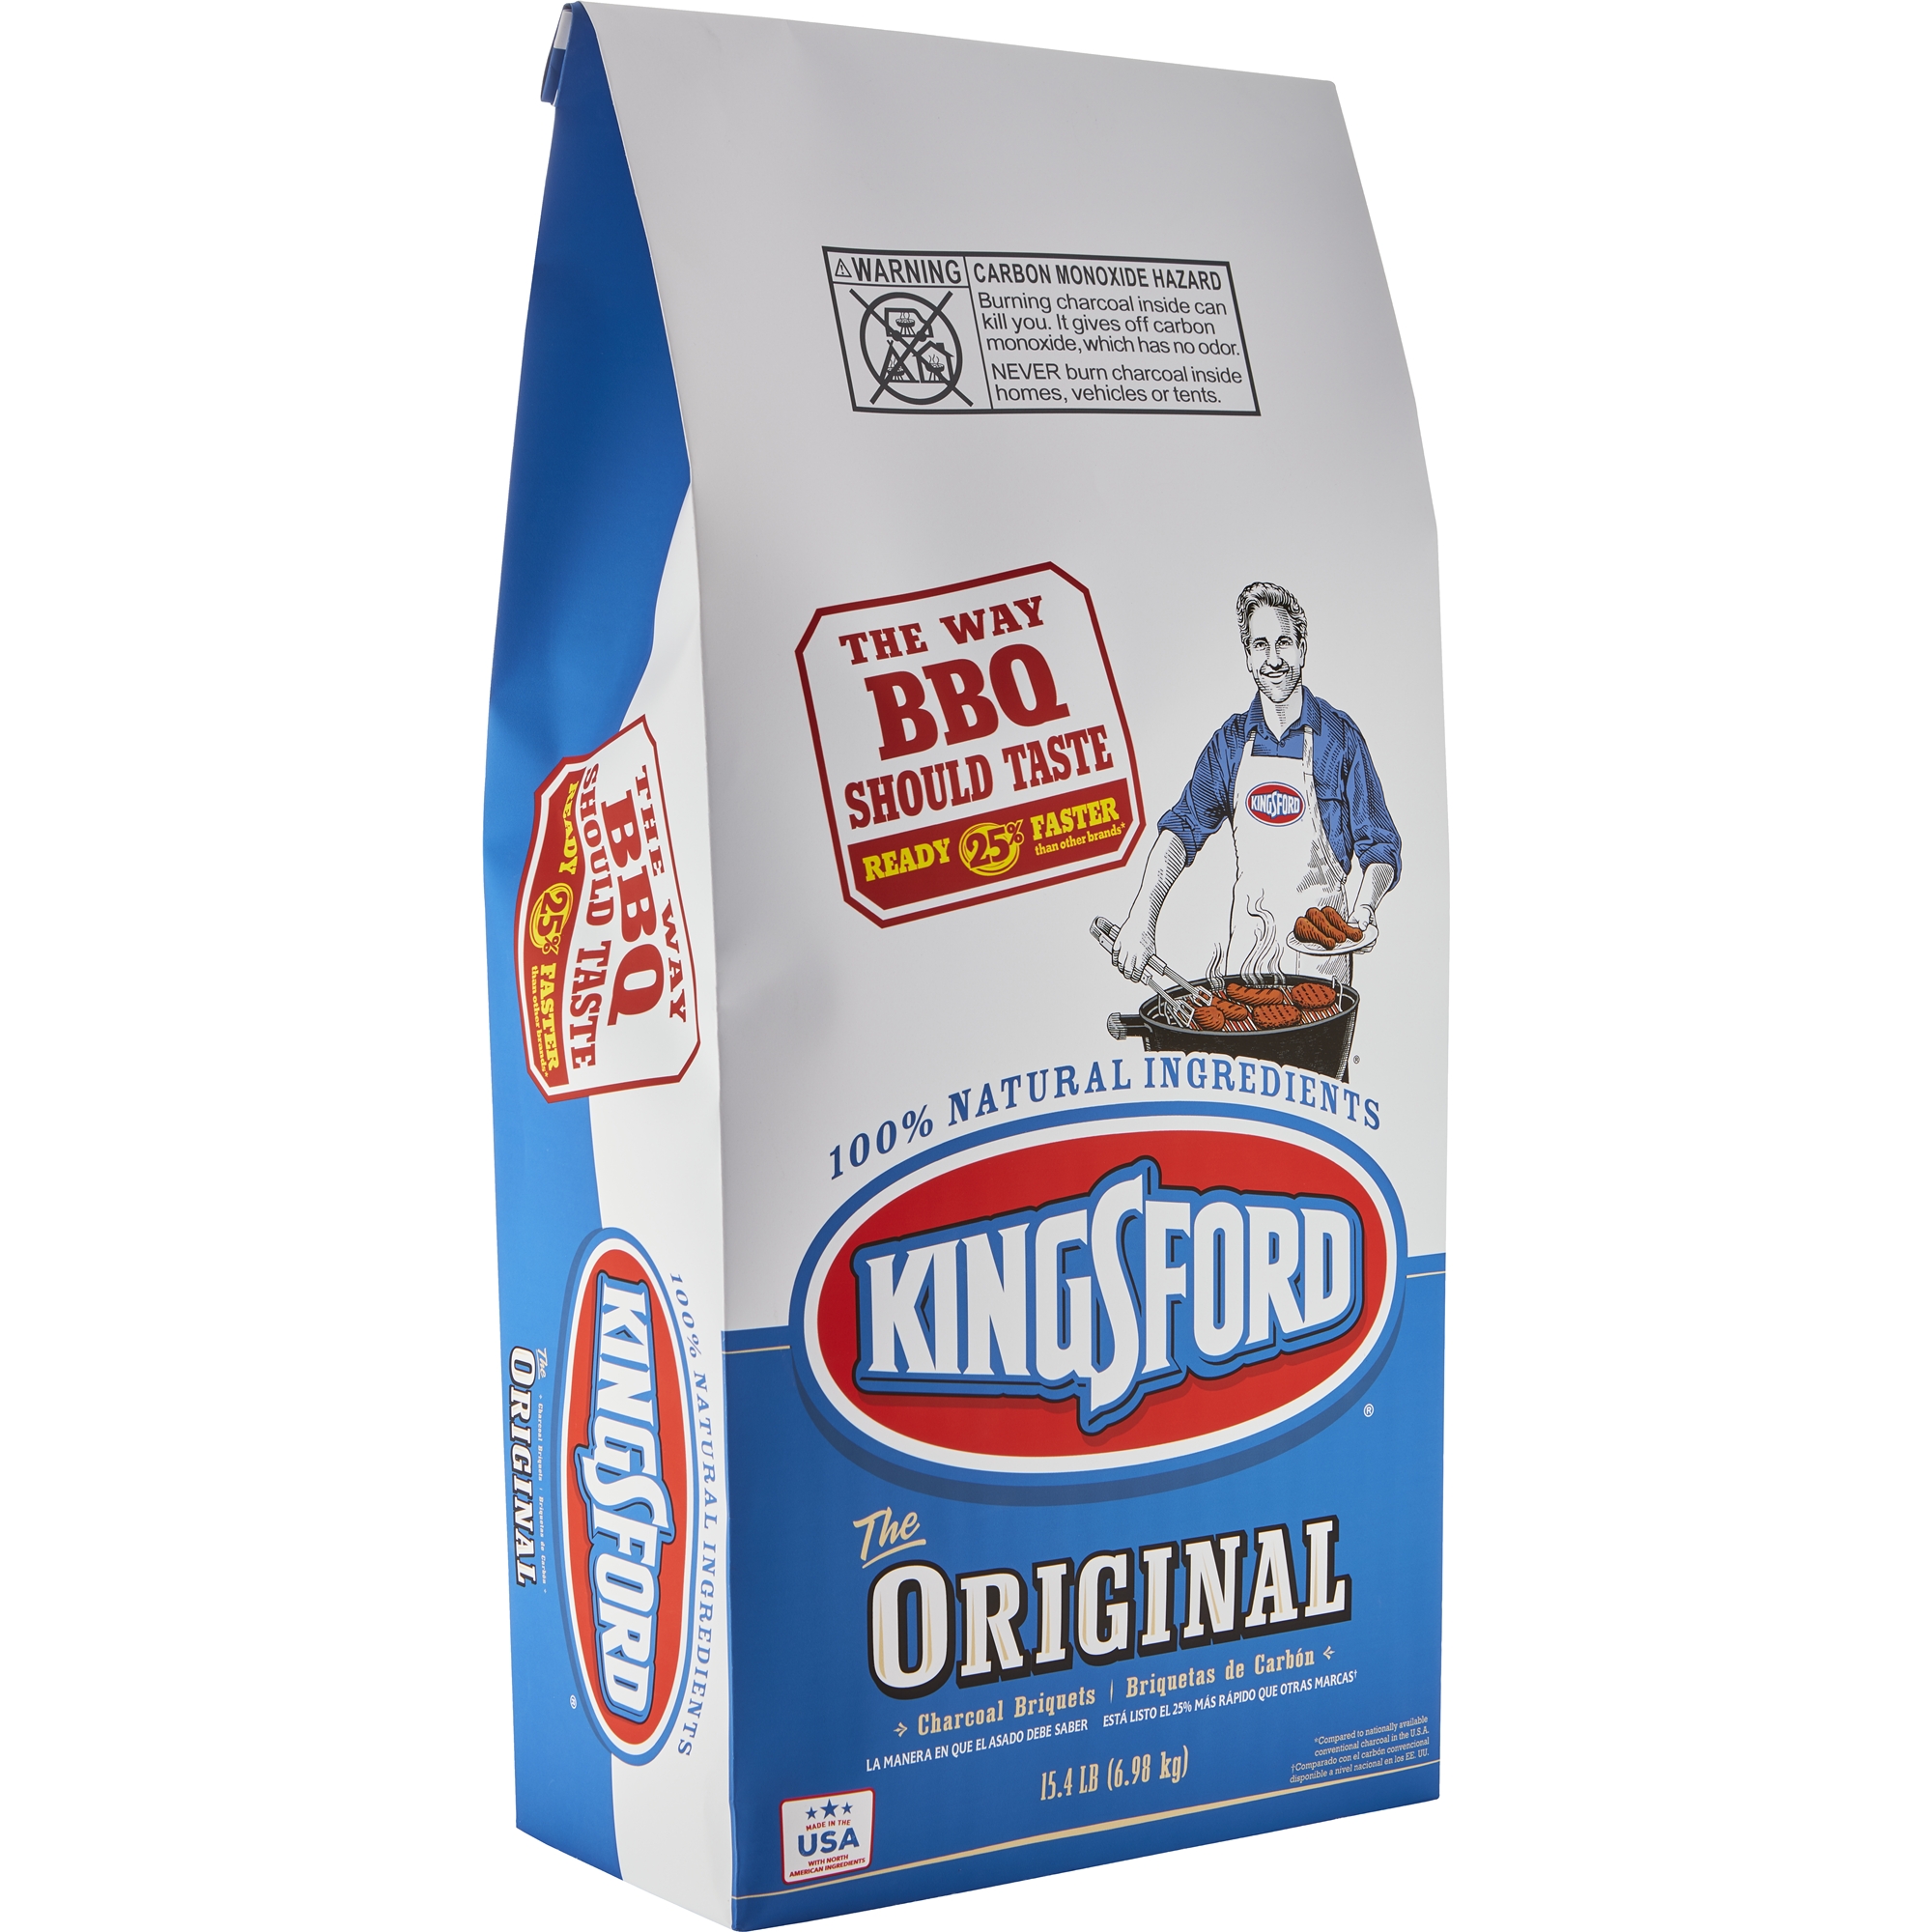 Kingsford original charcoal briquettes 15.4-lb bag for $8